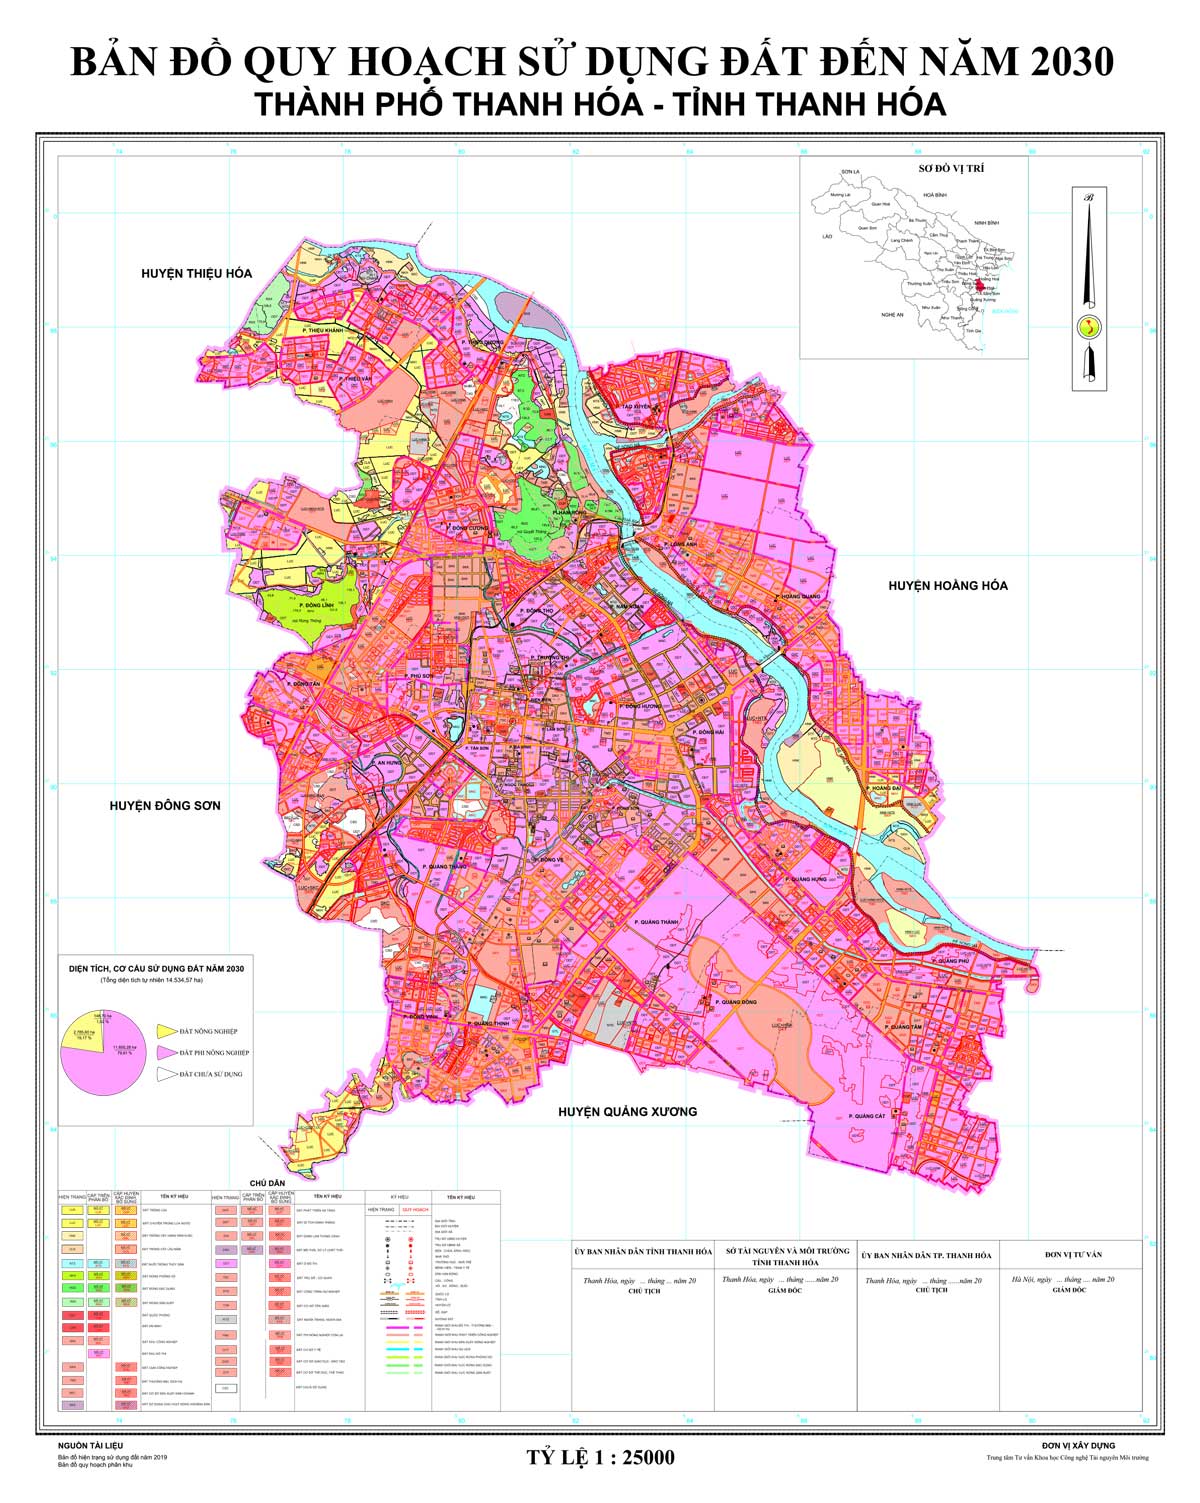 Bản đồ QHSDĐ TP Thanh Hóa đến năm 2030 (đã duyệt)